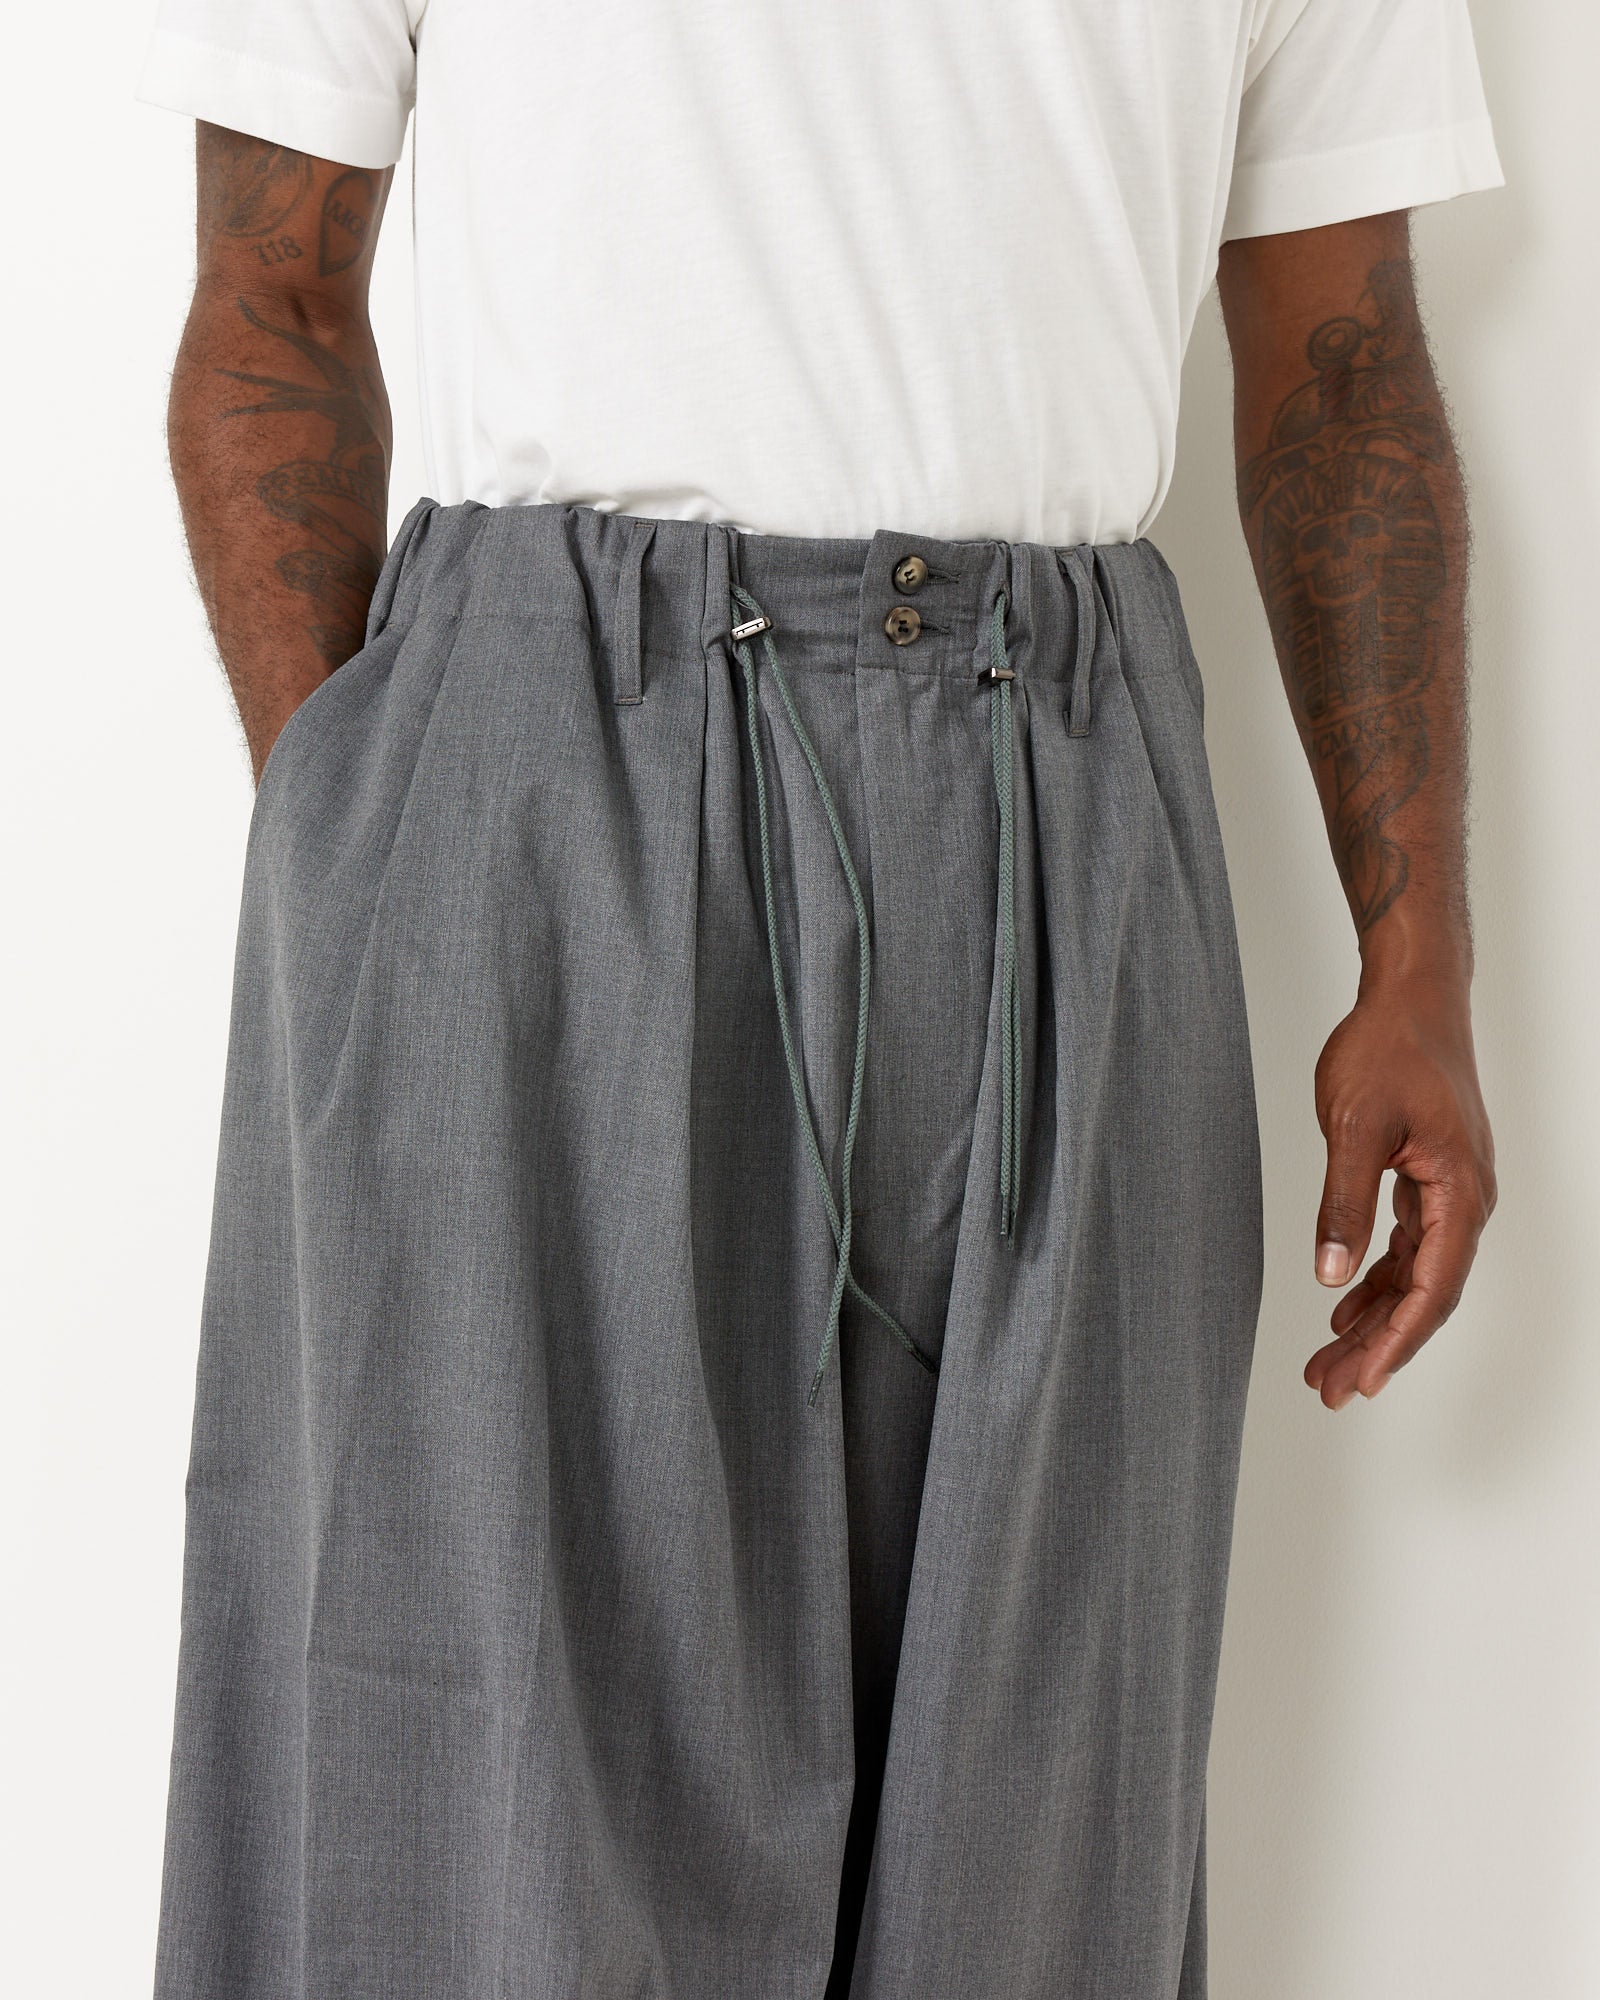 Essential Circular Pants in Light Grey